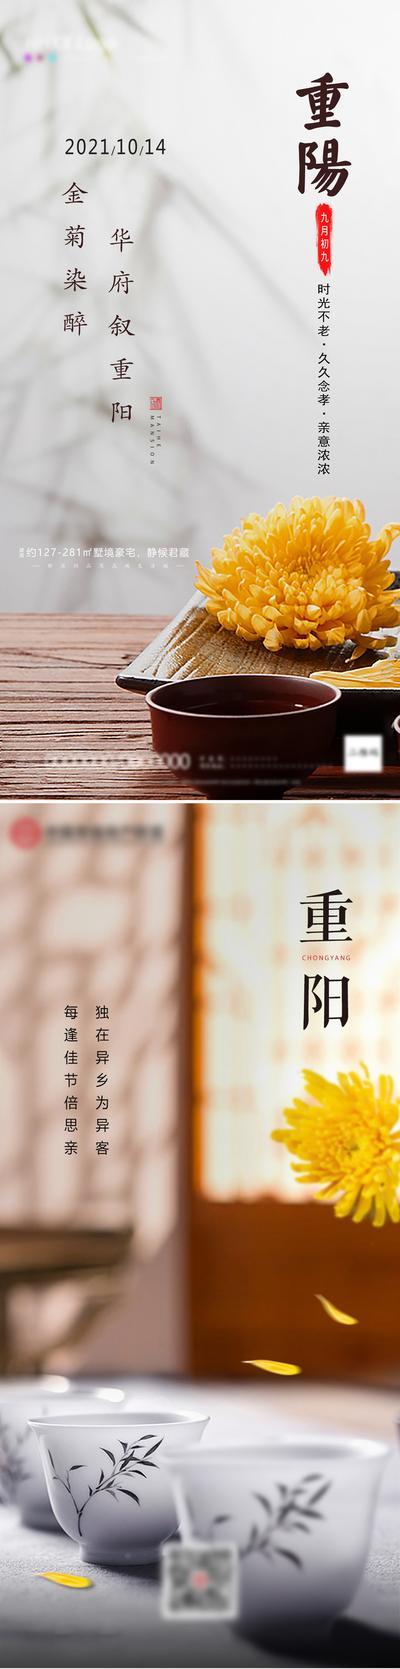 南门网 海报 房地产 中国传统节日 重阳节 中式 菊花 系列